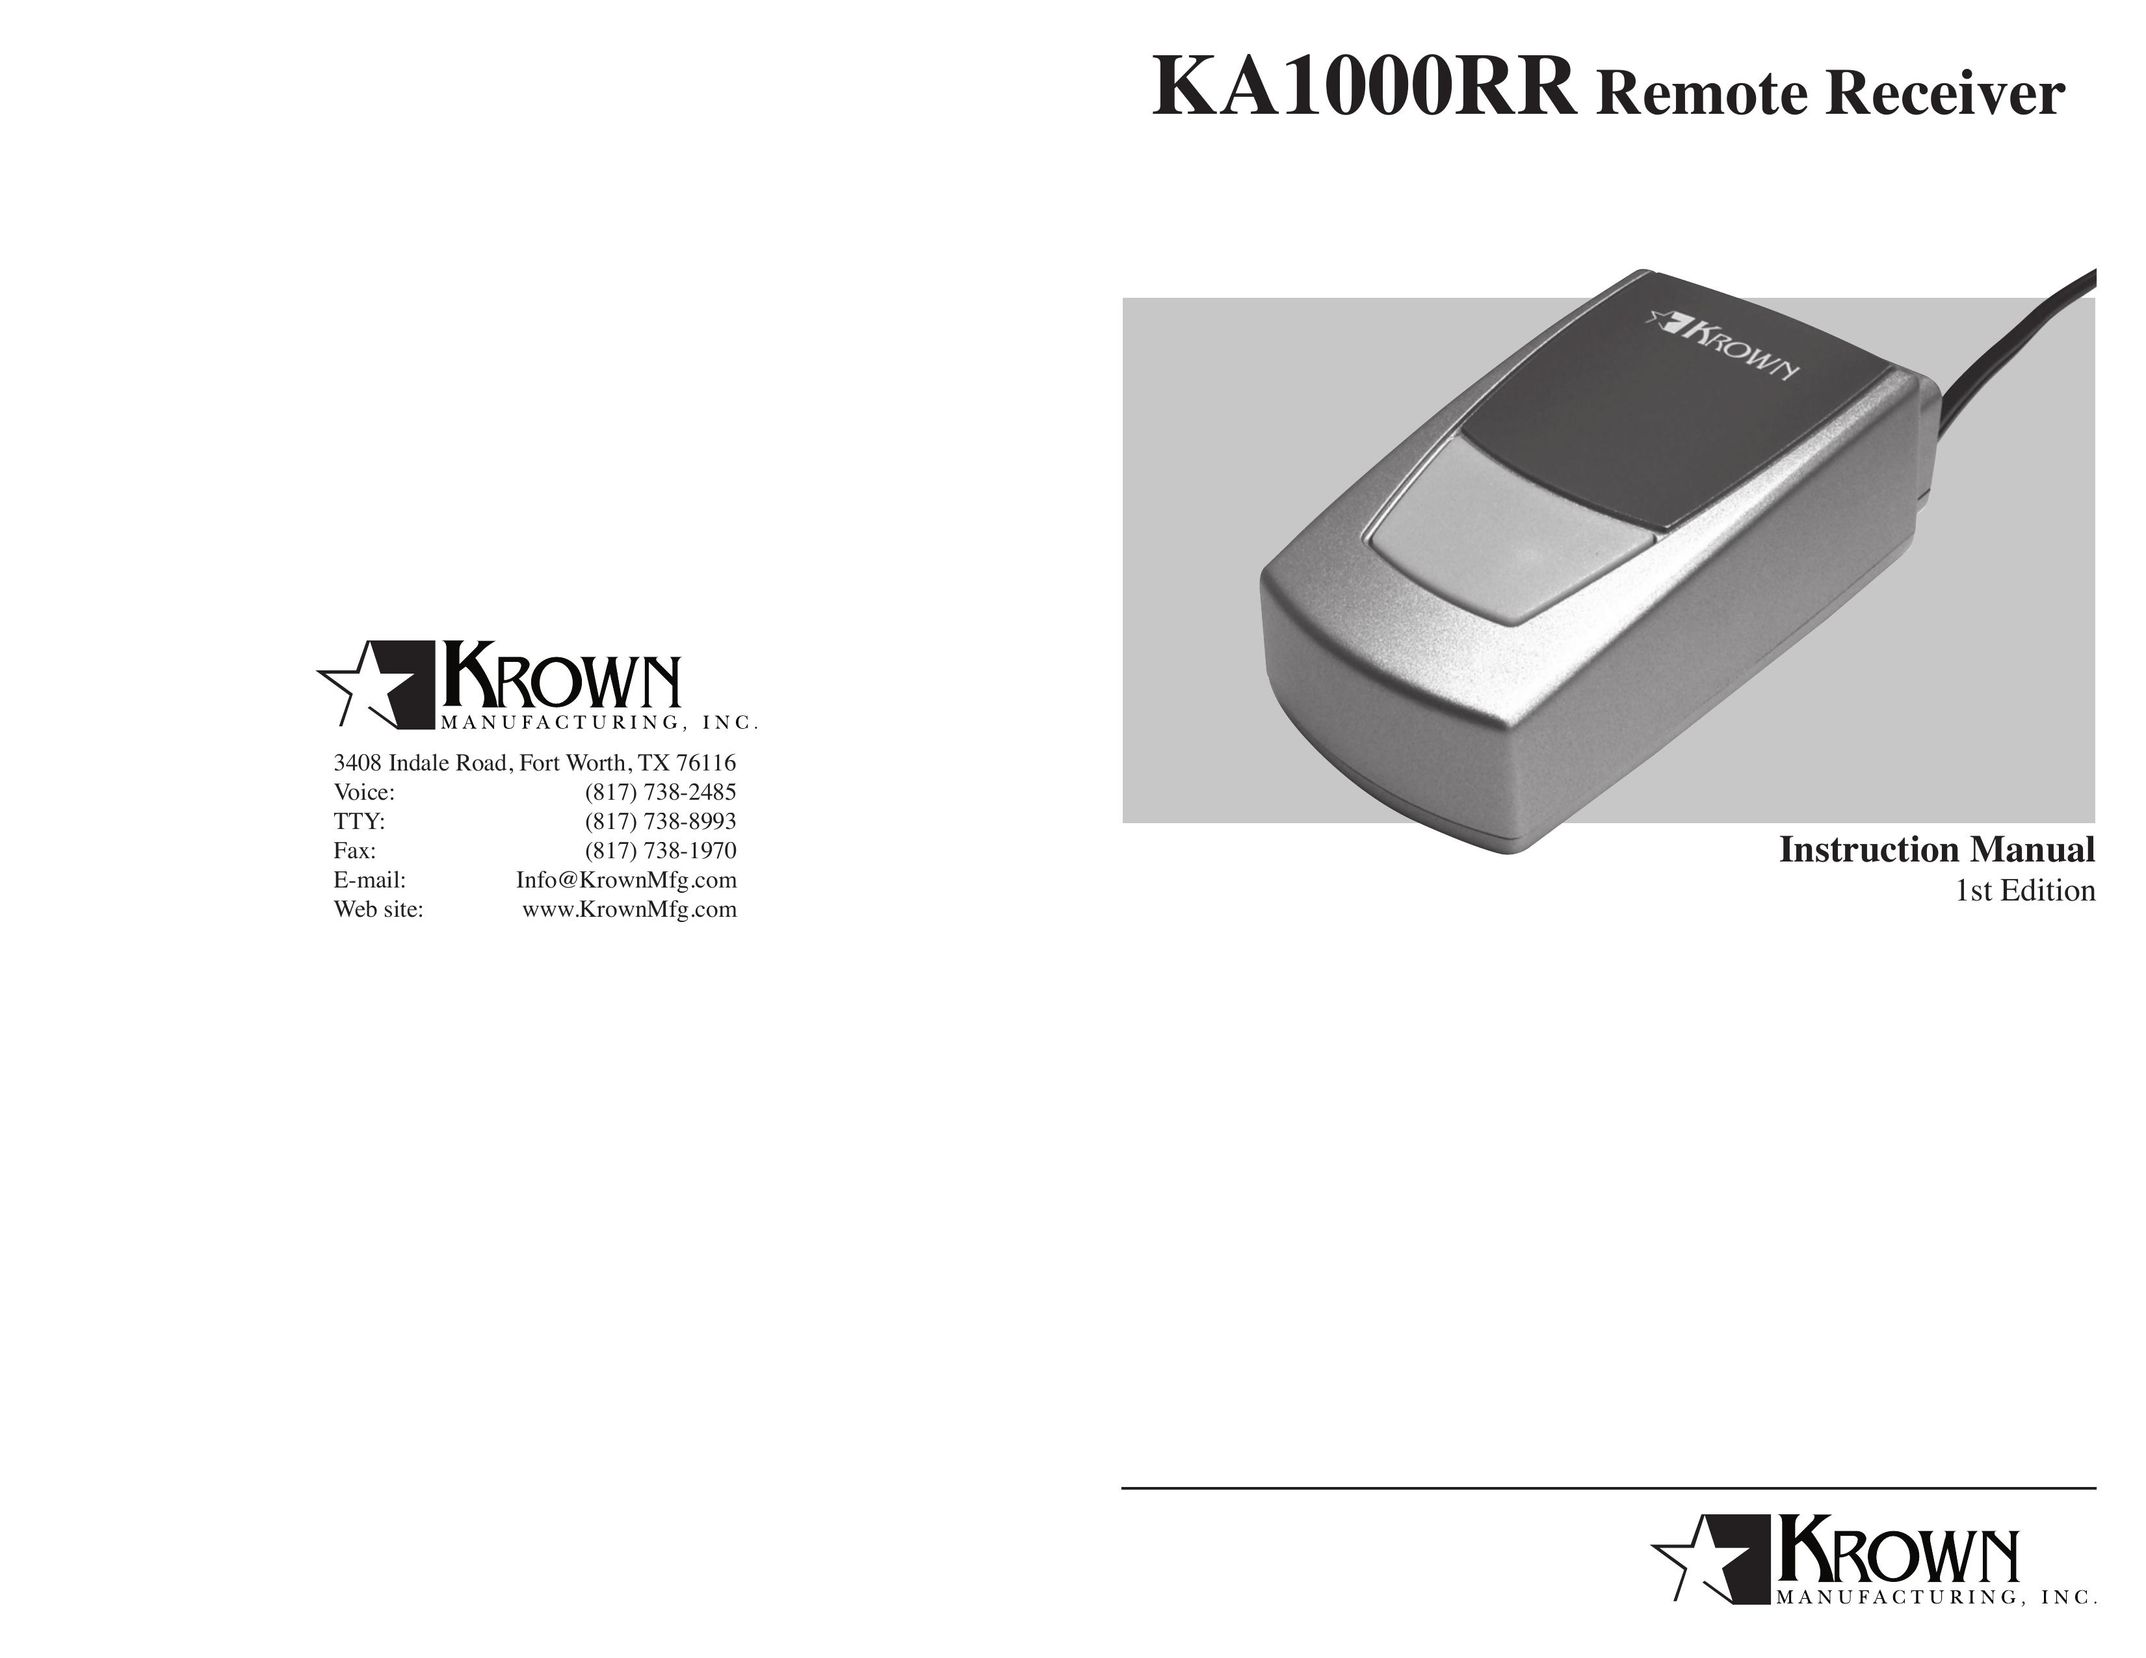 Krown Manufacturing KA1000RR Universal Remote User Manual